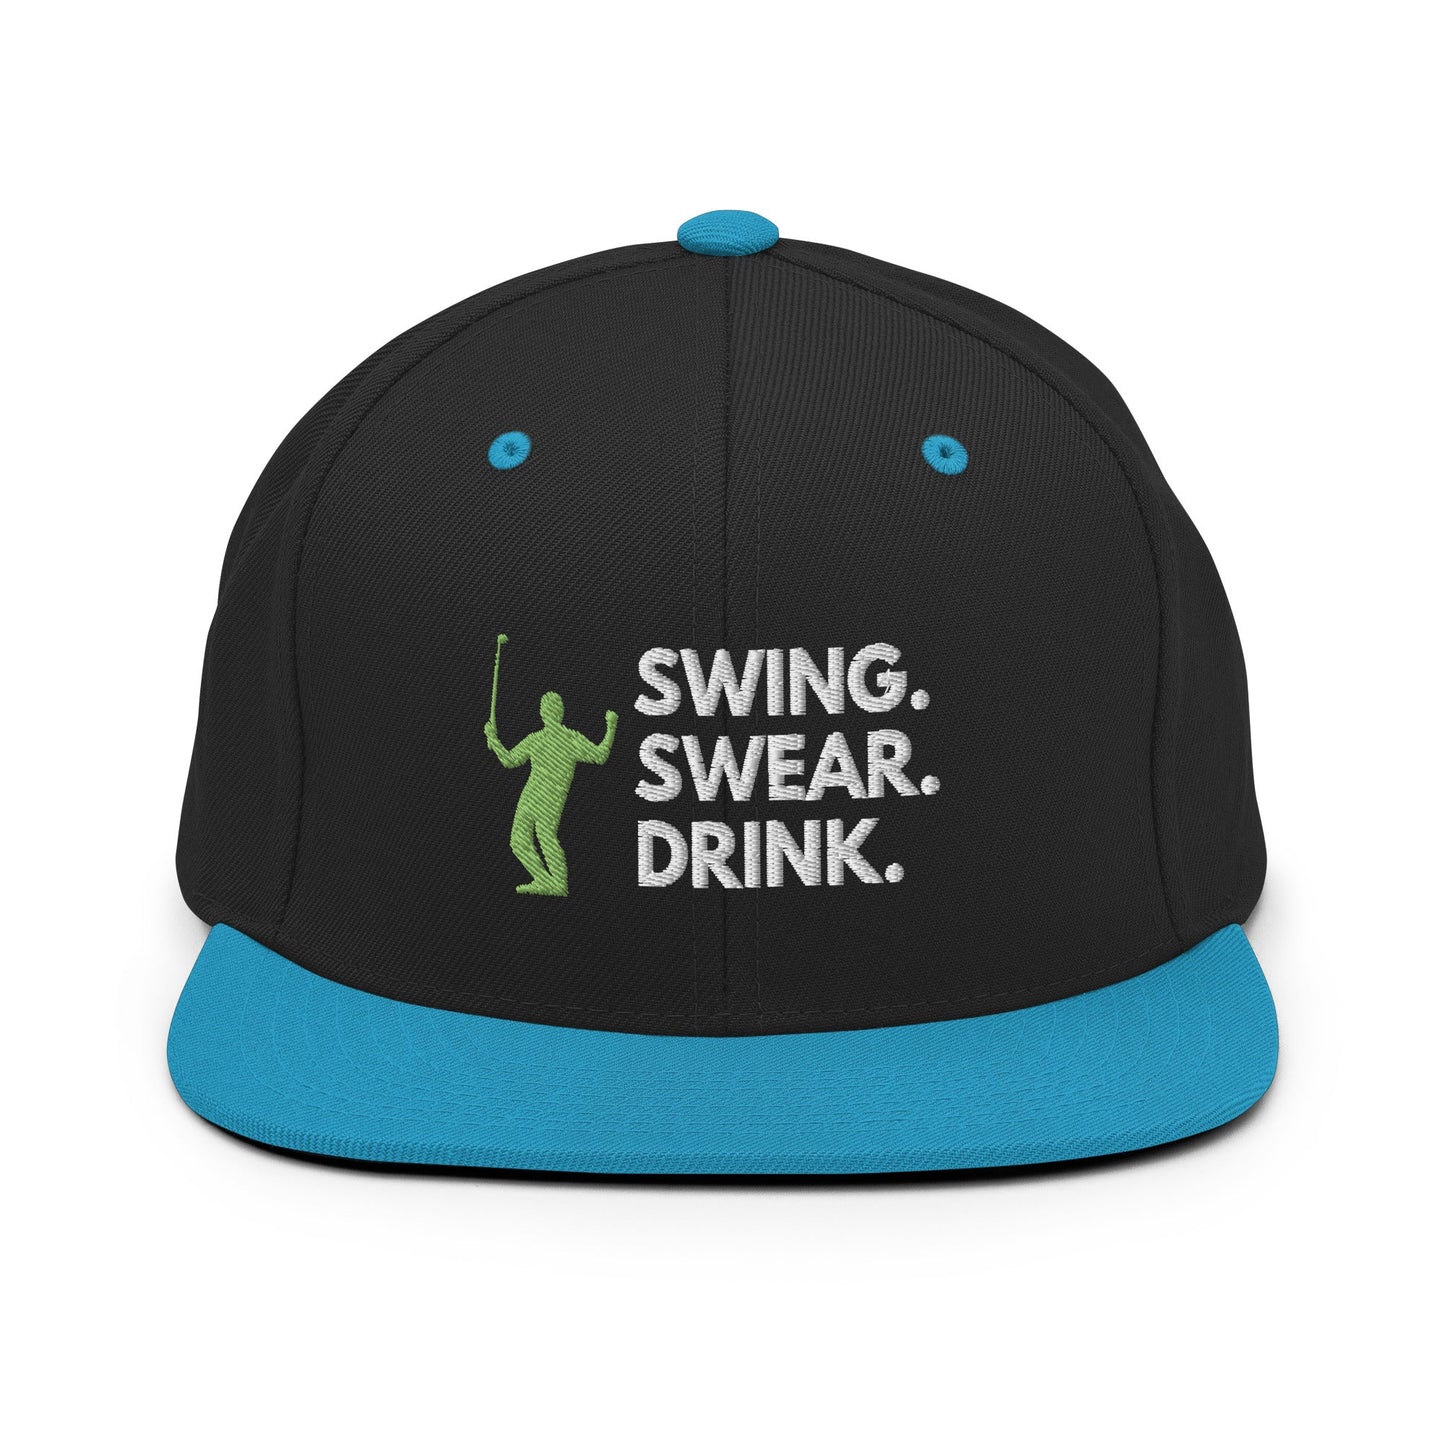 Funny Golfer Gifts  Snapback Hat Black/ Teal Swing. Swear. Drink Snapback Hat